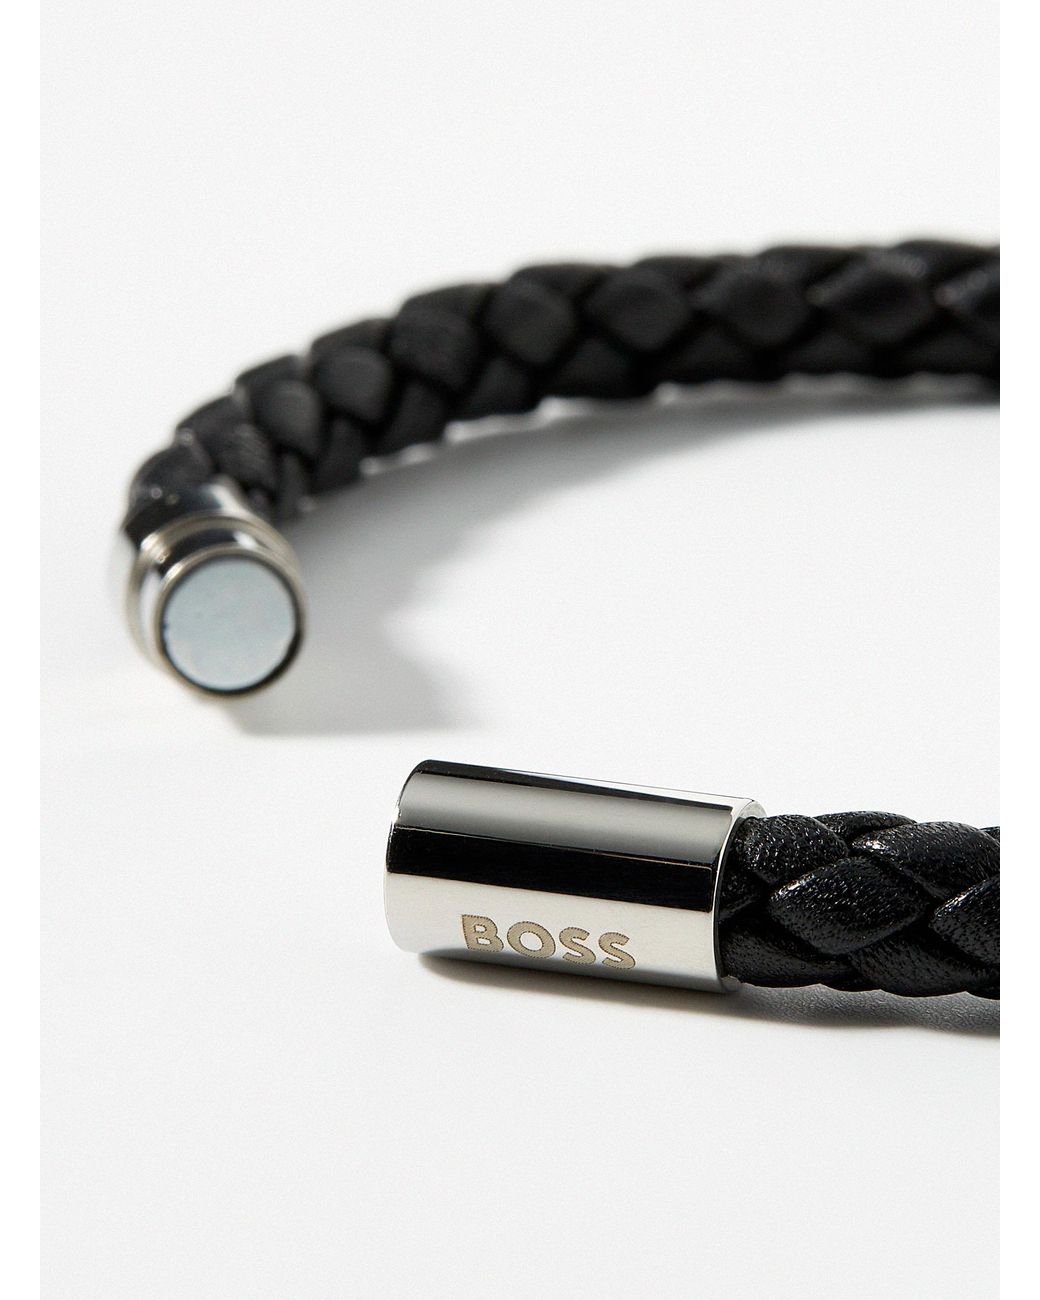 BOSS by HUGO BOSS Magnetic Braided Leather Bracelet in Black for Men | Lyst